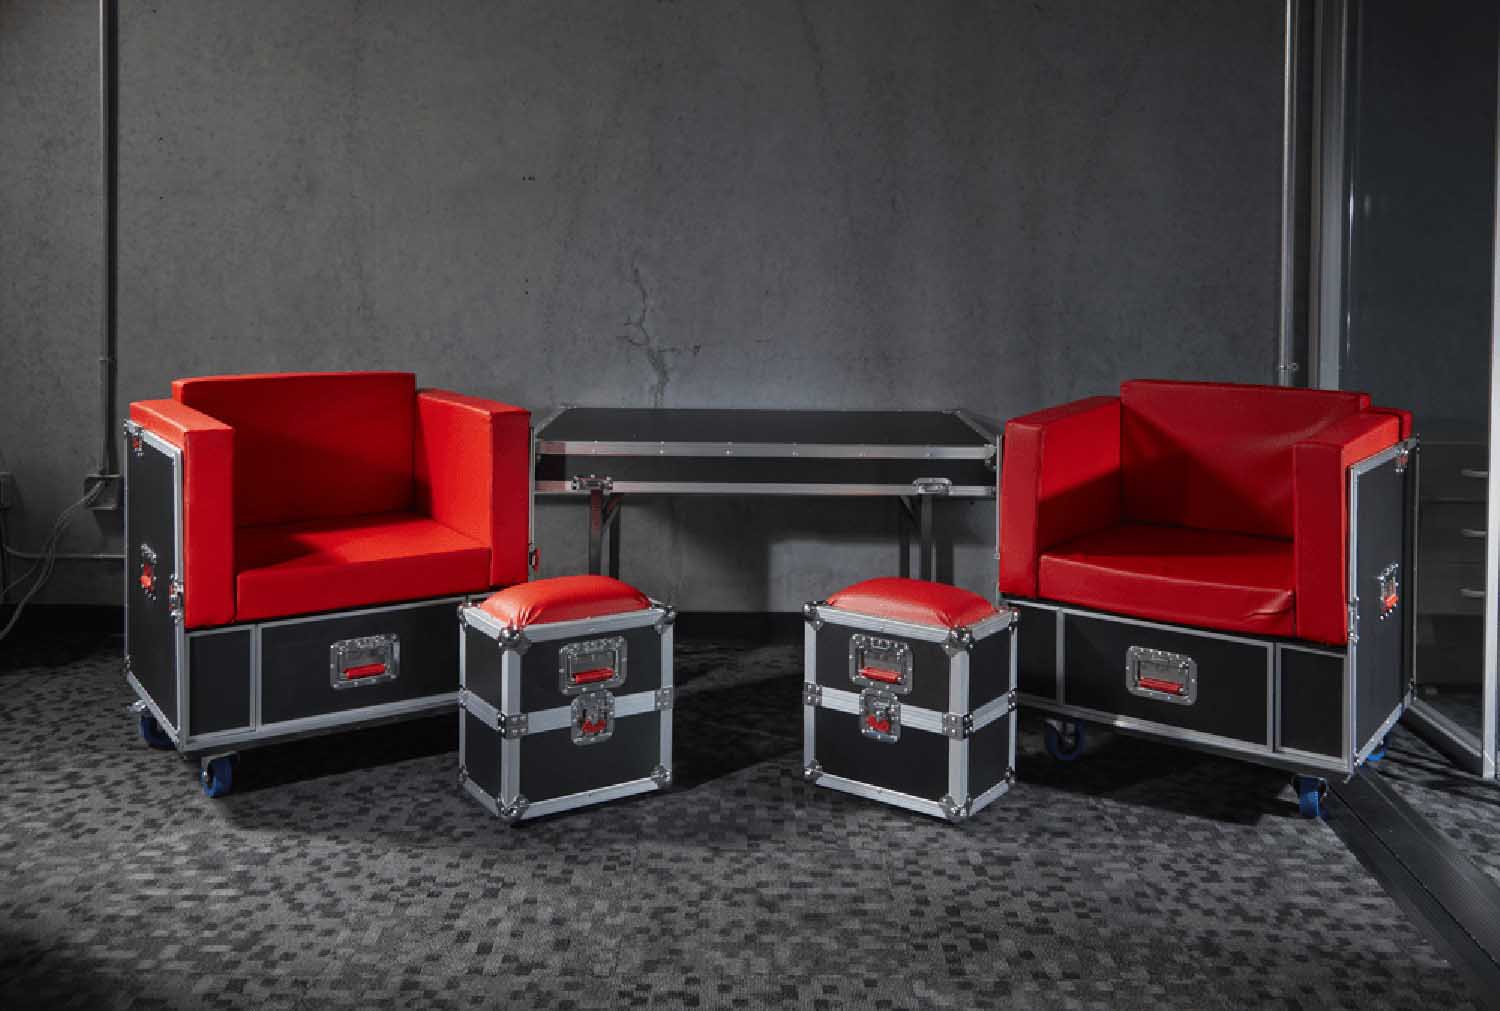 Gator G-TOURLOUNGE Furniture Transforming Series Case - Hollywood DJ